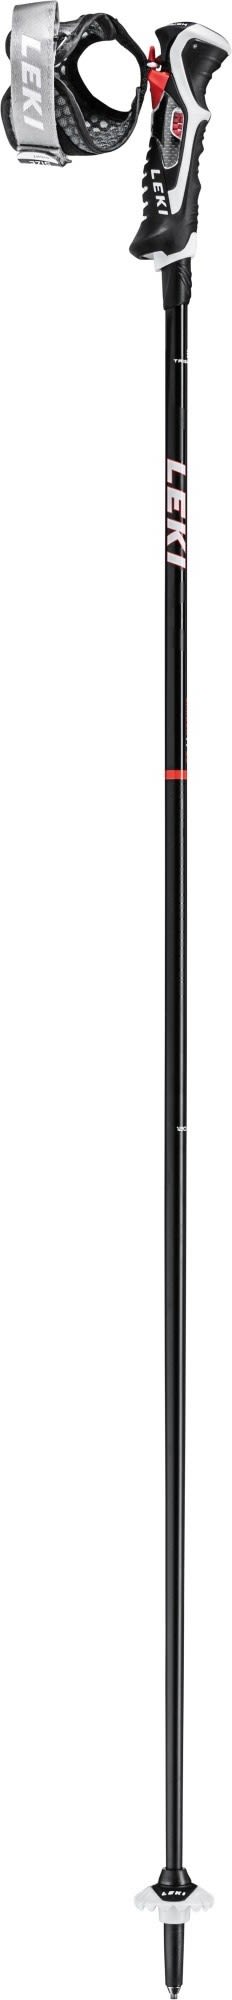 Leki Carbon 14 3d (vorgängermodell) Schwarz | Größe 120 cm |  Ski- & Tourenst